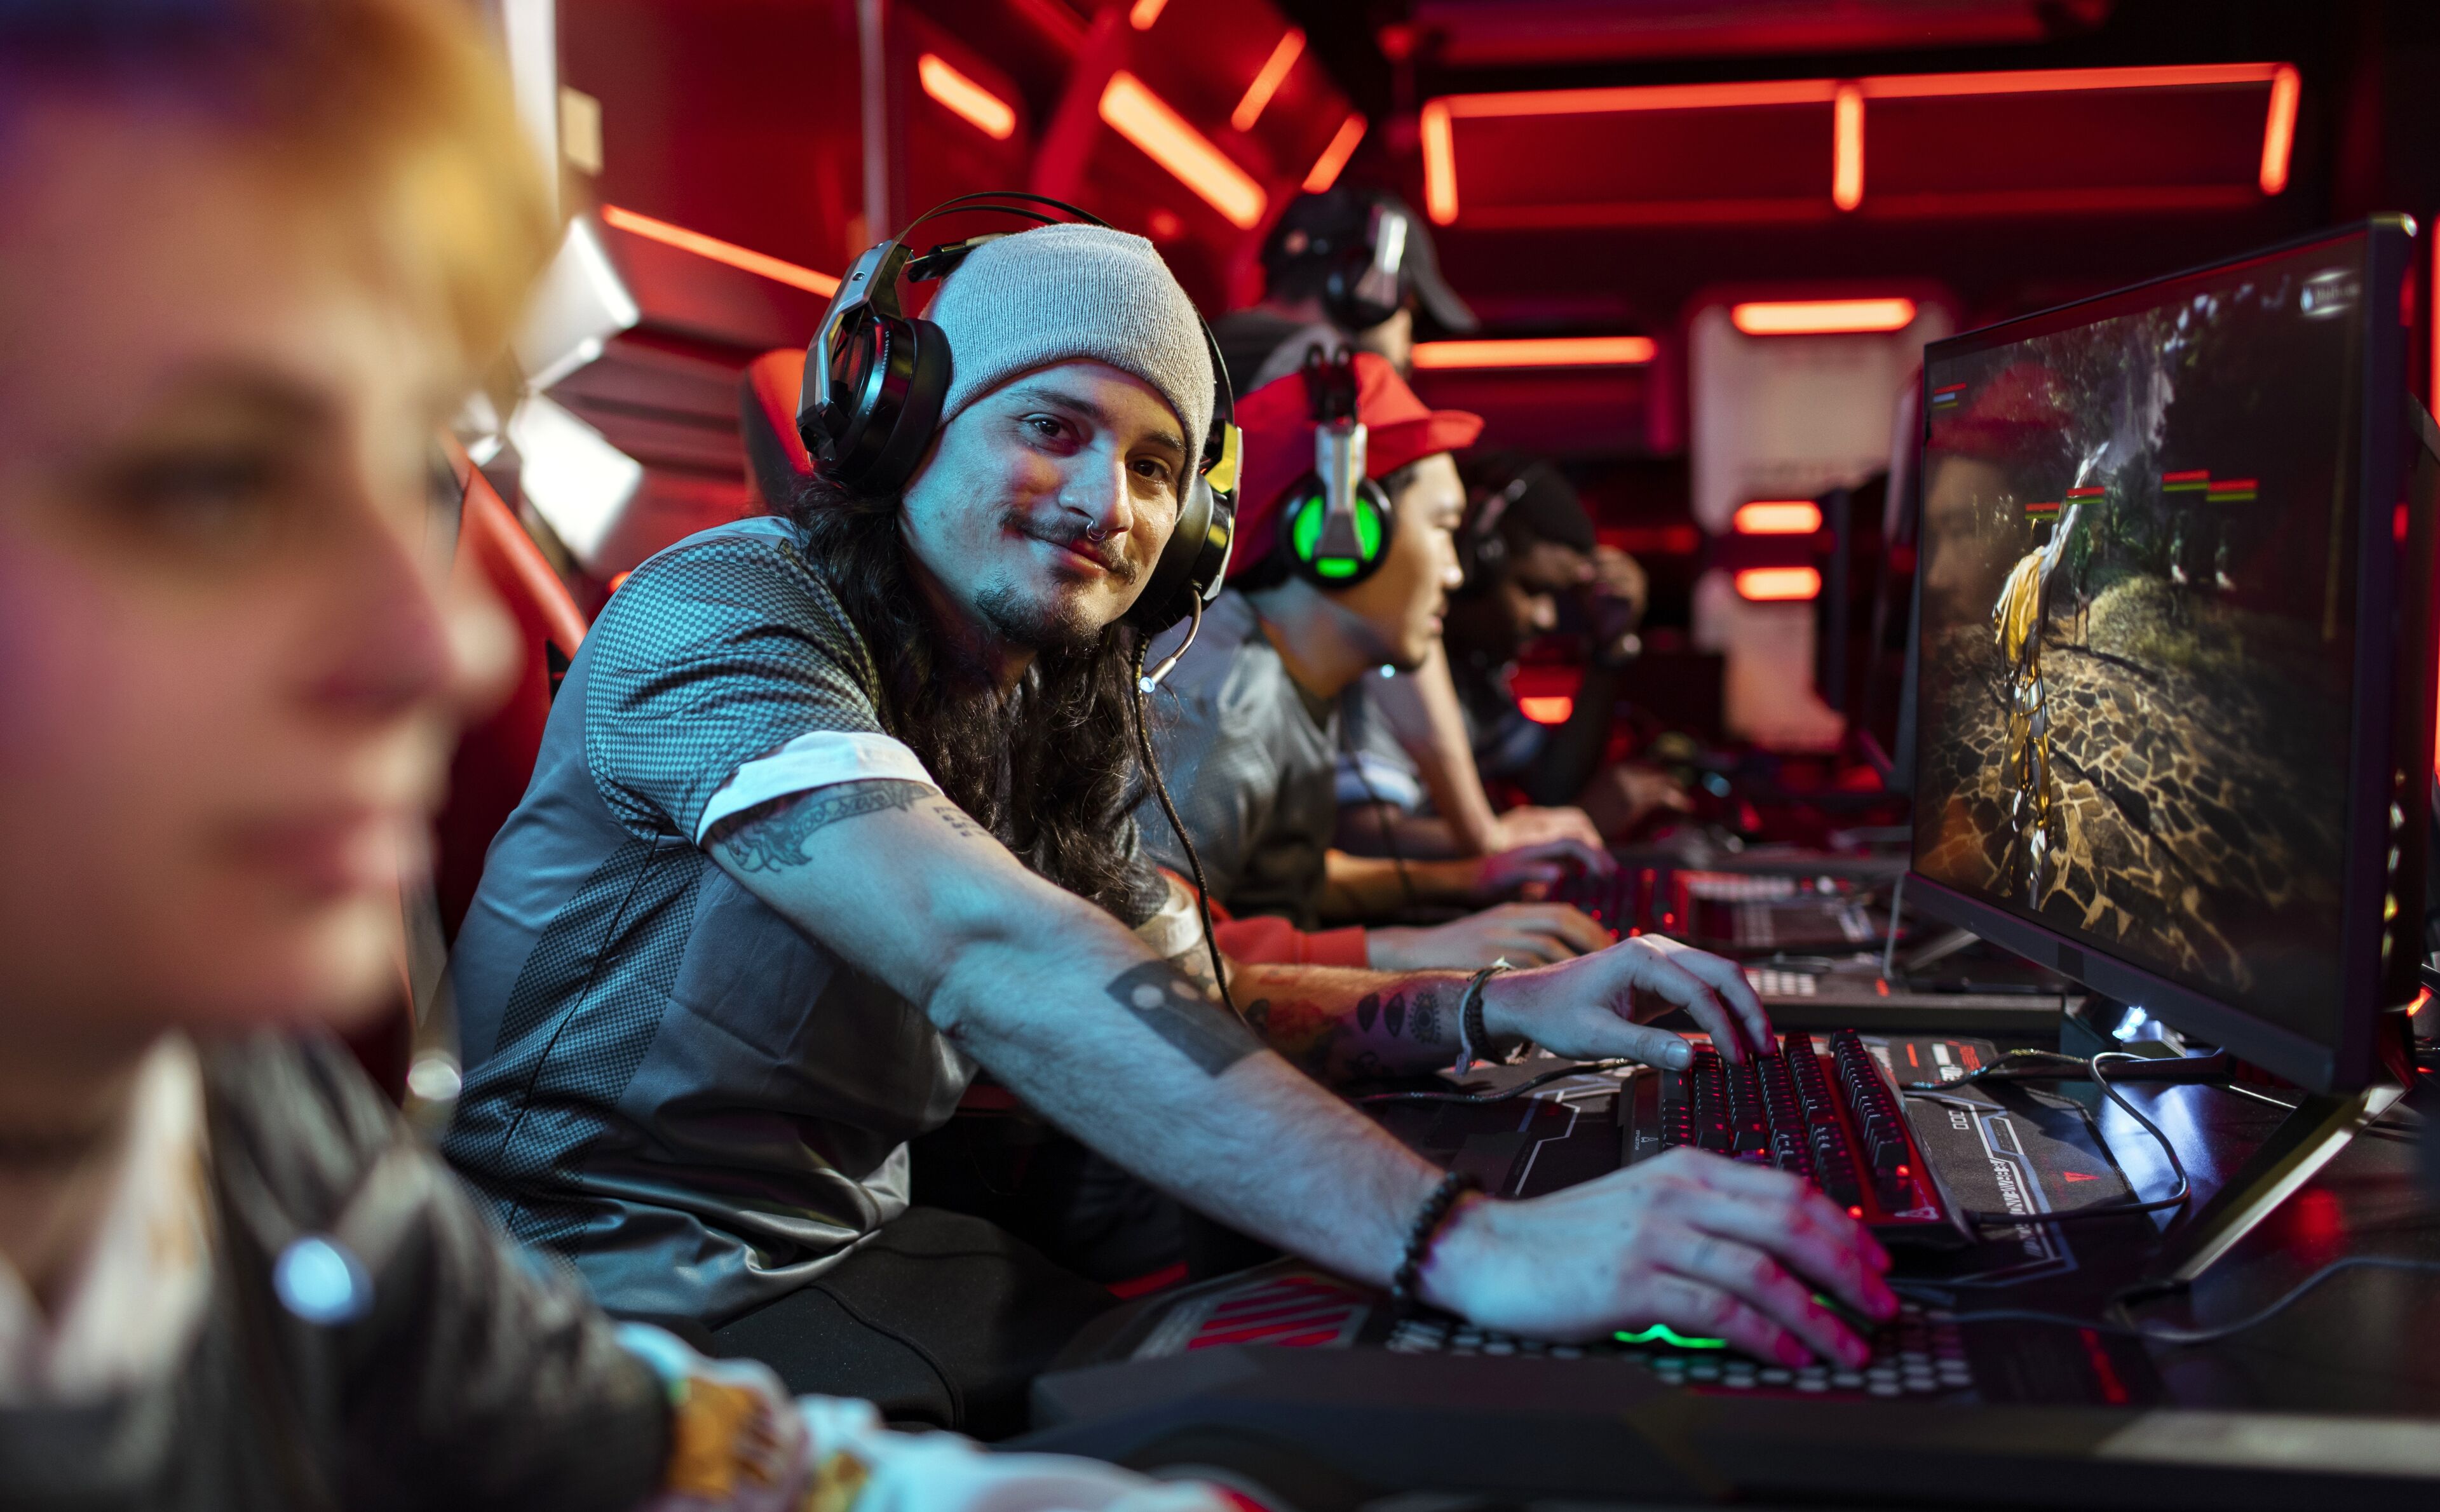 Joueurs avec casques concentrés sur le jeu vidéo compétitif lors d'un événement esports dans une ambiance rouge néon.